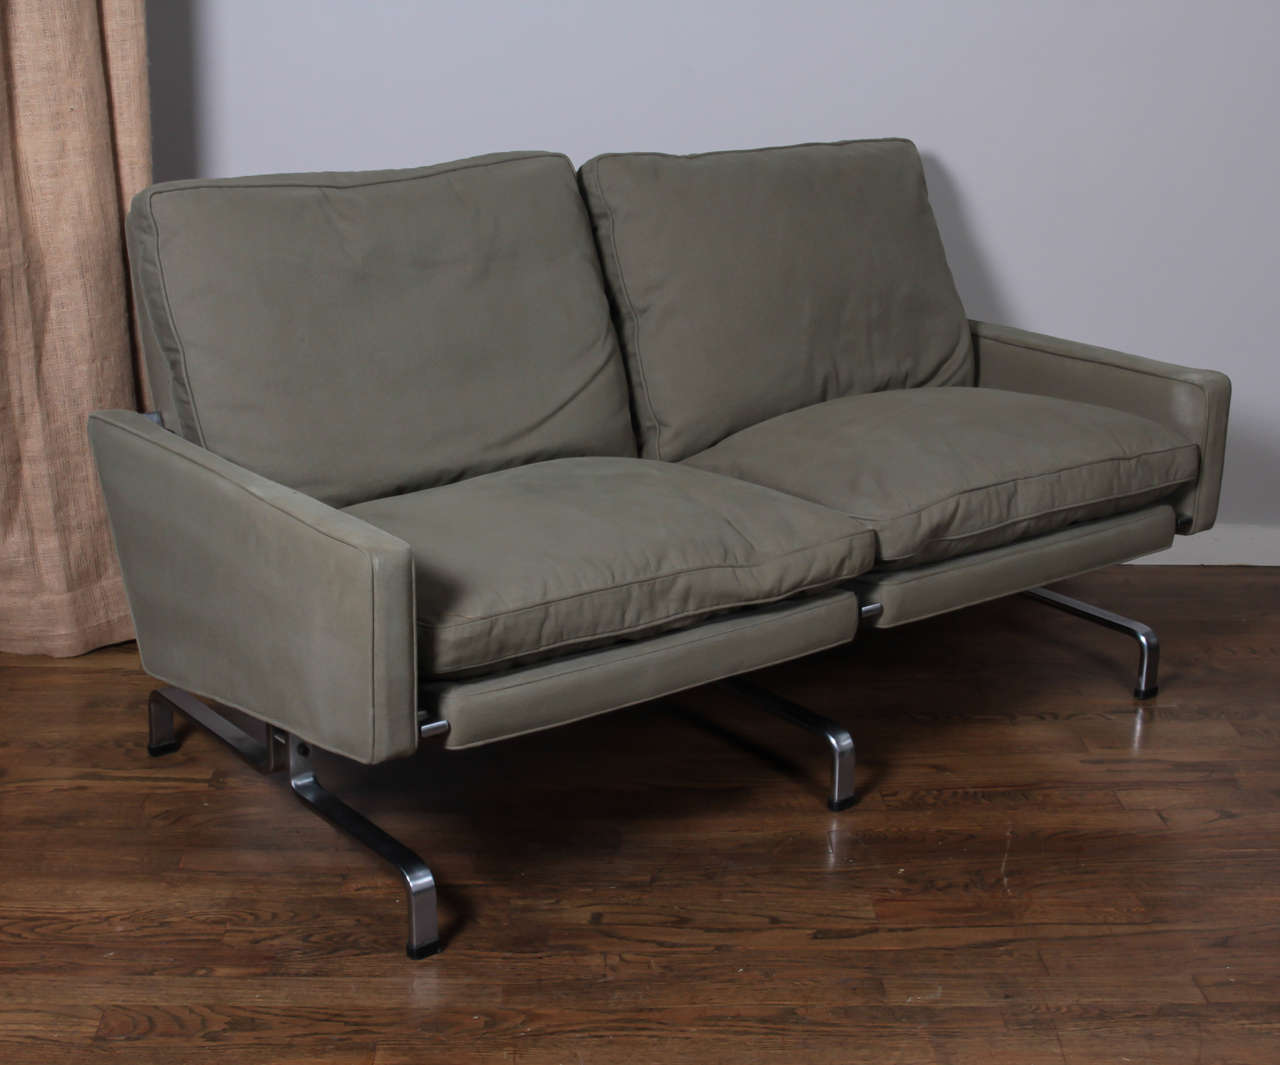 Danish Poul Kjaerholm PK31 Two-Seat Sofa, Manufactured by Fritz Hansen